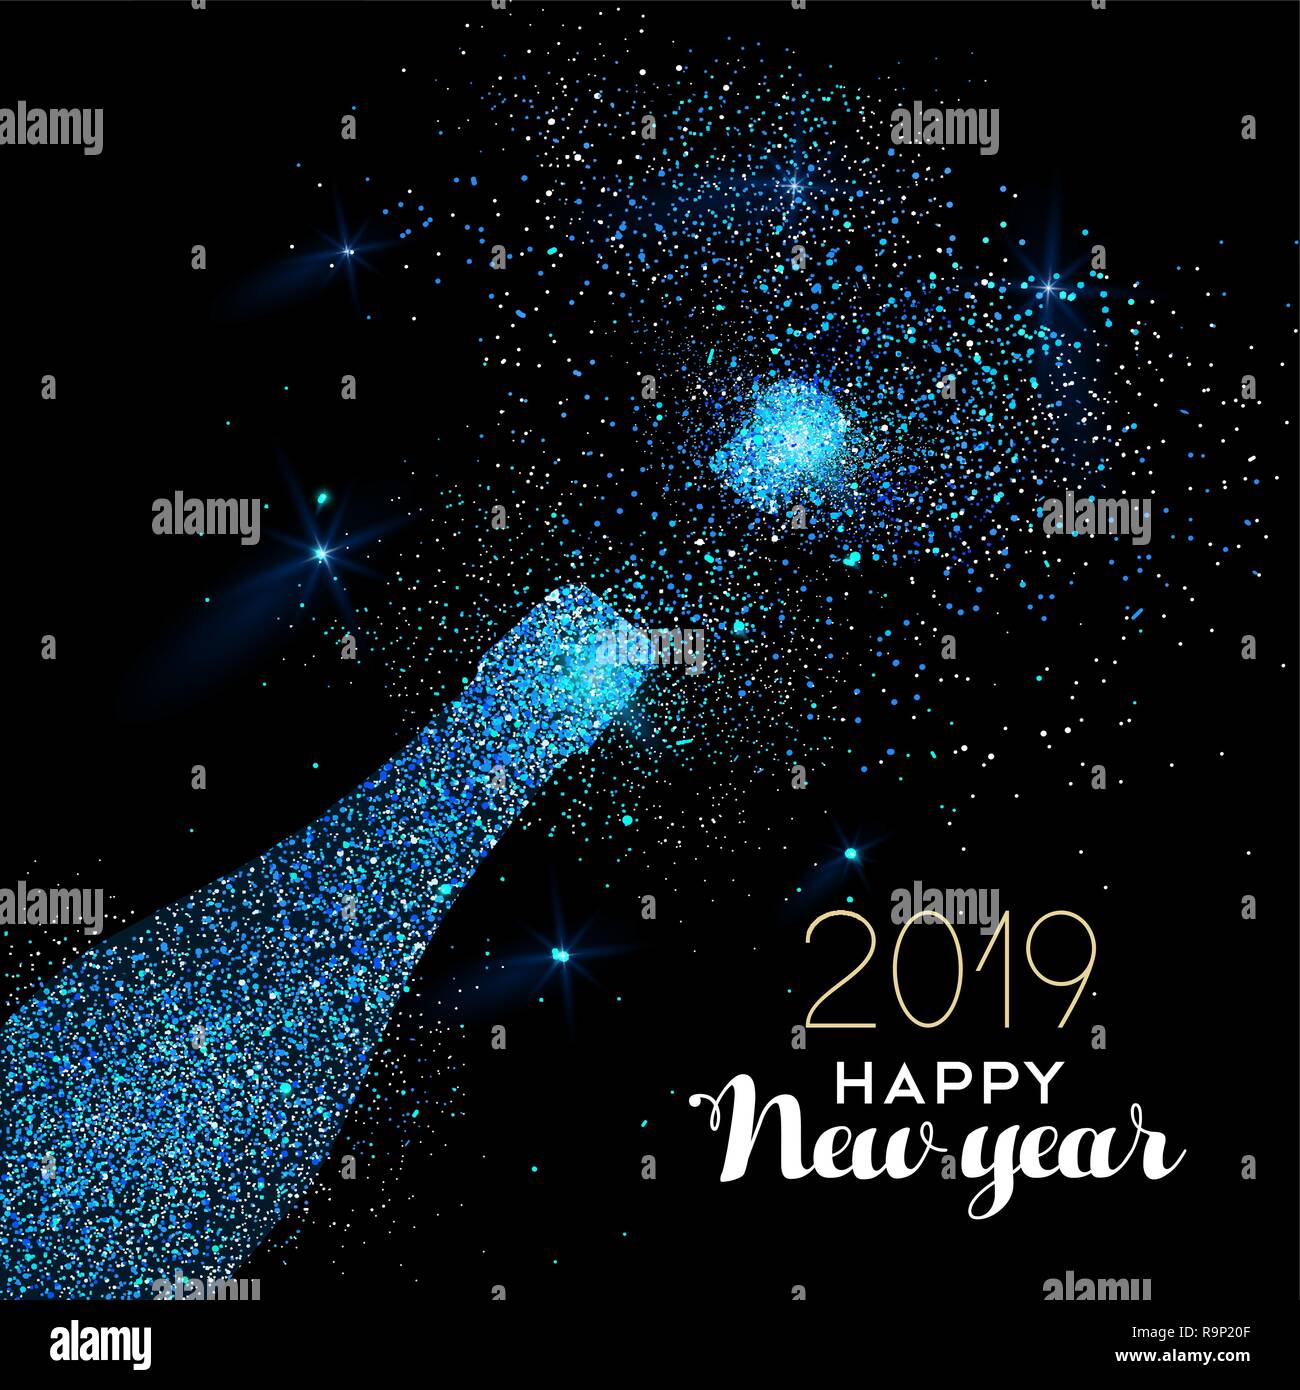 Neues Jahr luxus Grußkarte Abbildung, Champagner Flasche aus einem blauen Glitzer Textur auf schwarz 24.00 Uhr Hintergrund mit Urlaub Text zitieren. Stock Vektor